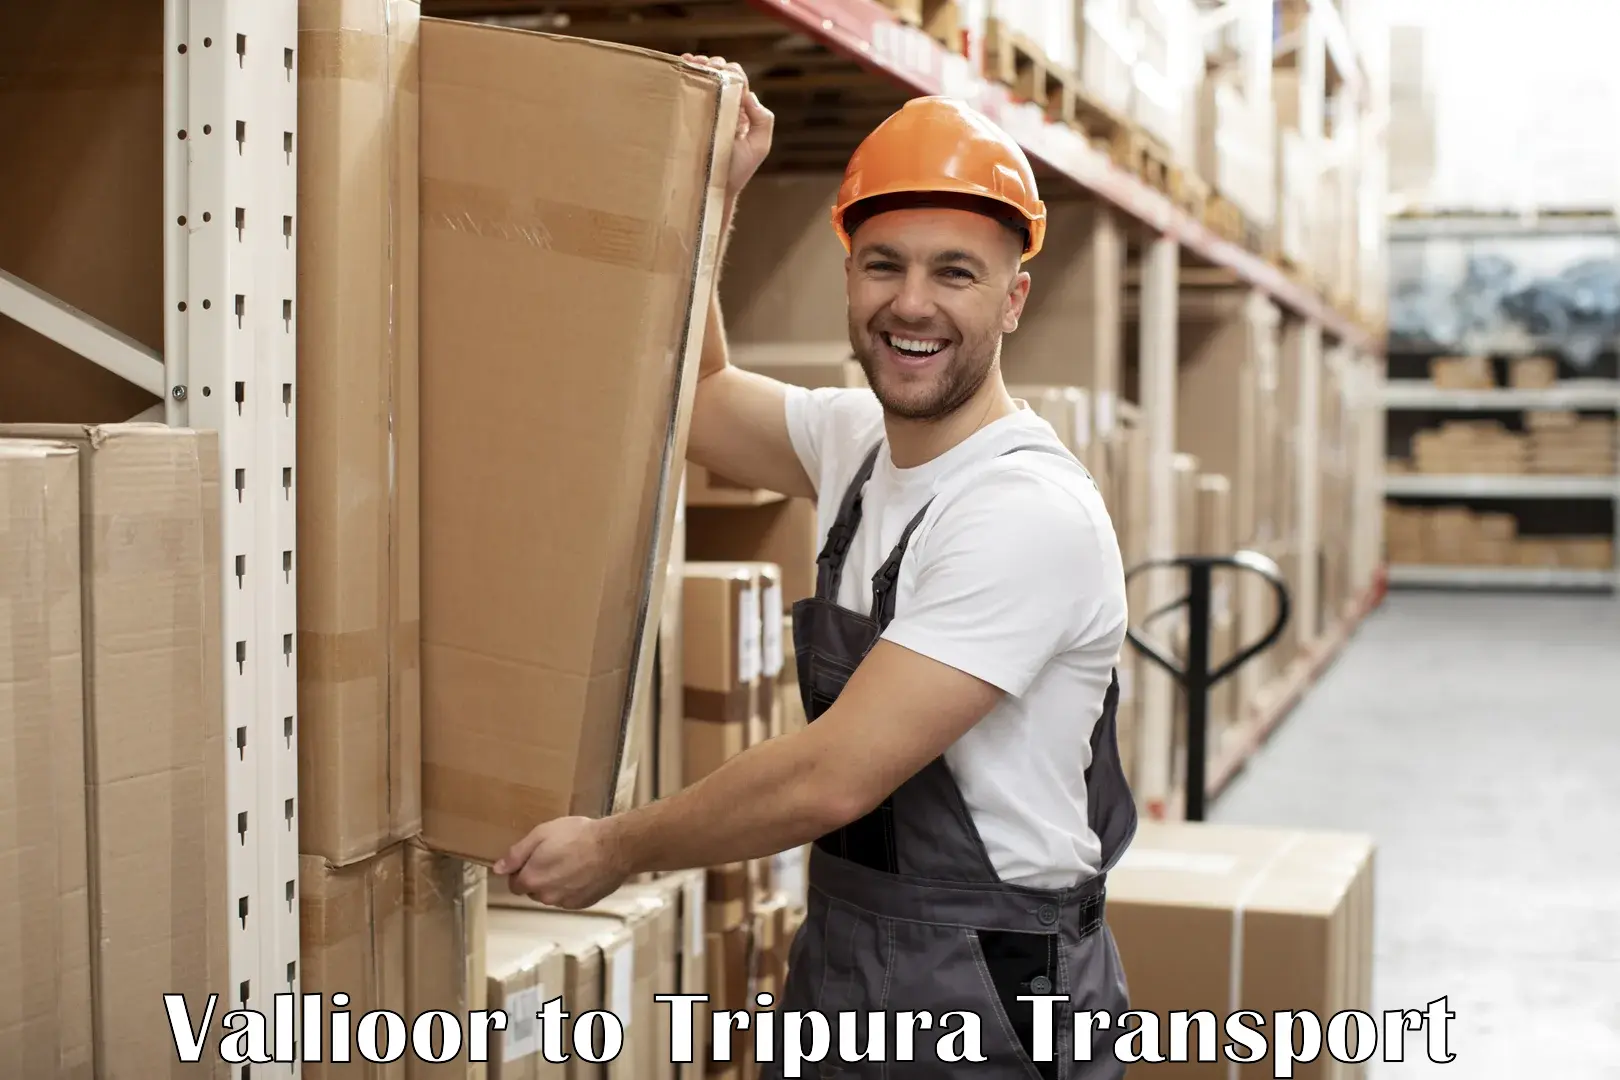 Online transport service Vallioor to West Tripura